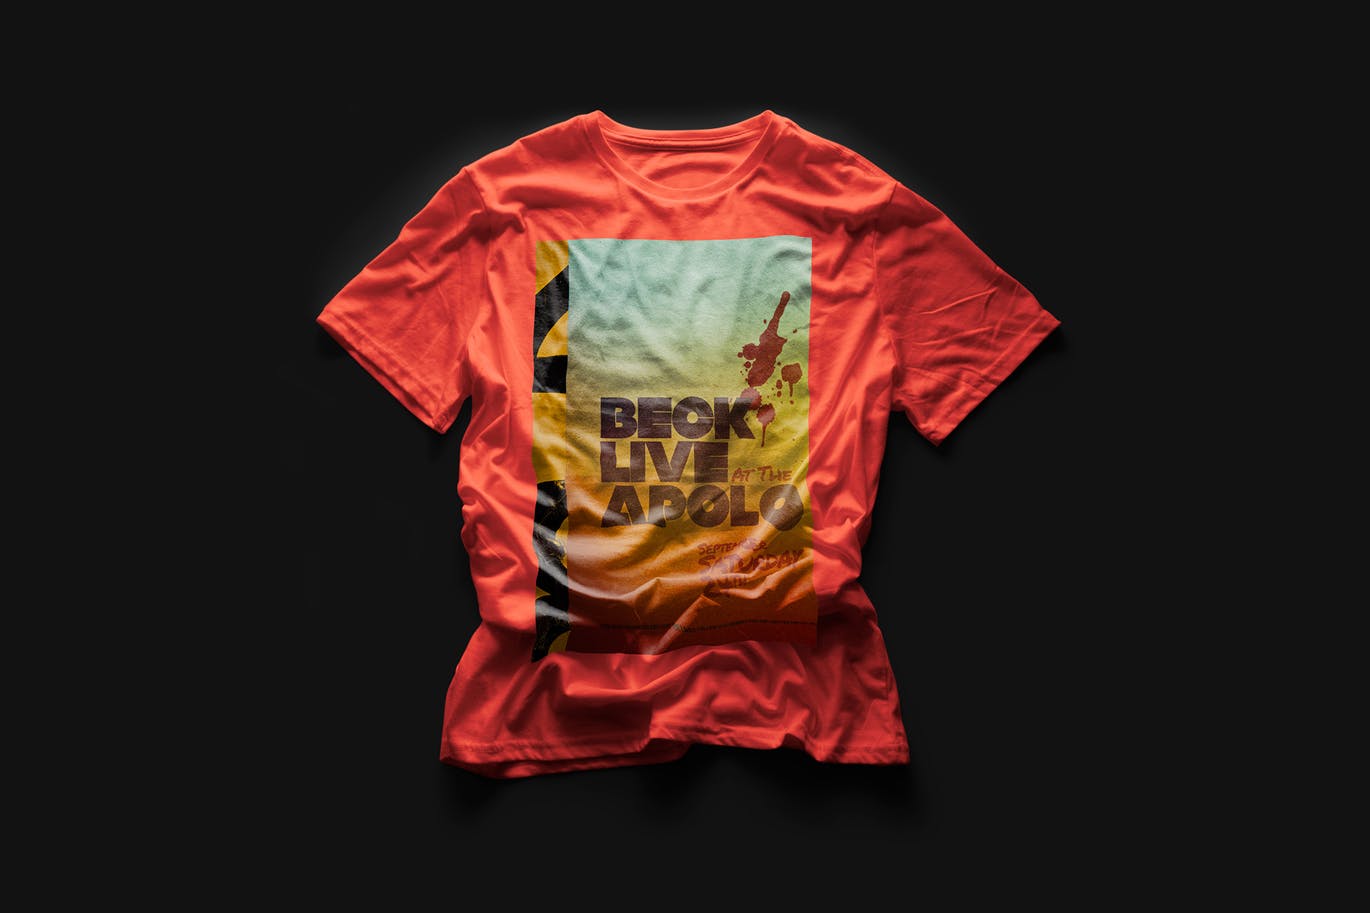 都市风格T恤印花图案设计预览样机16图库精选 Urban T-Shirt Mock-Up插图(6)